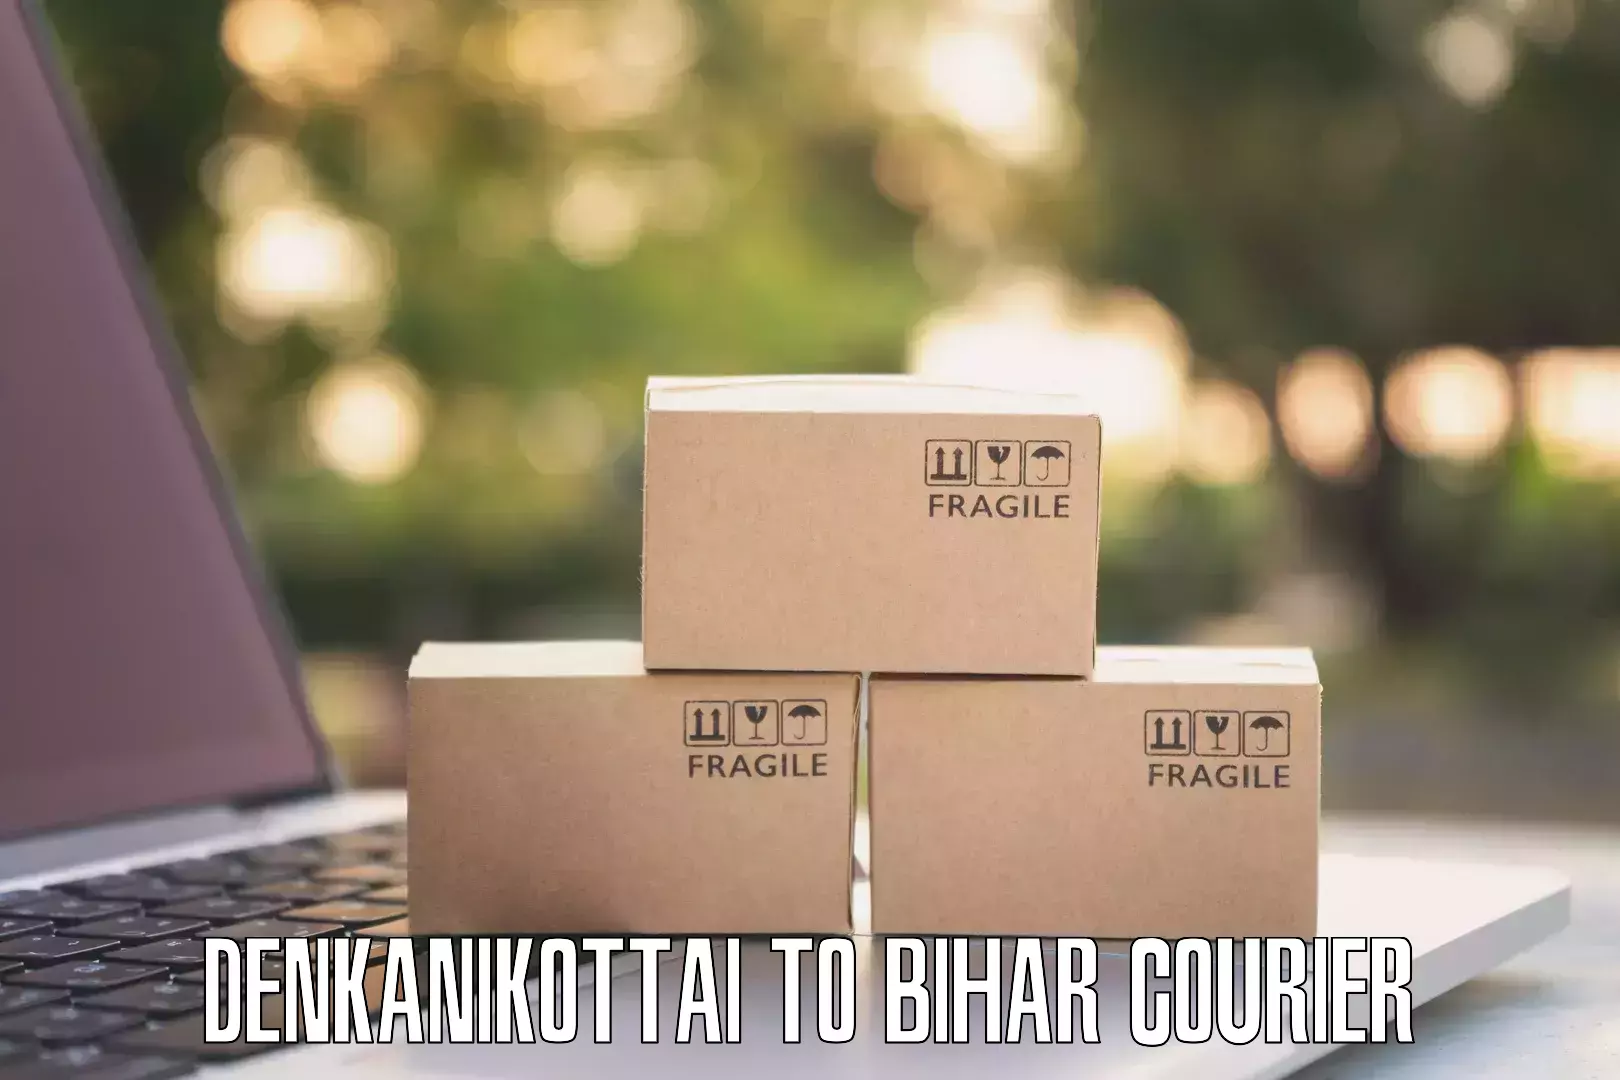 Personal parcel delivery in Denkanikottai to Manihari